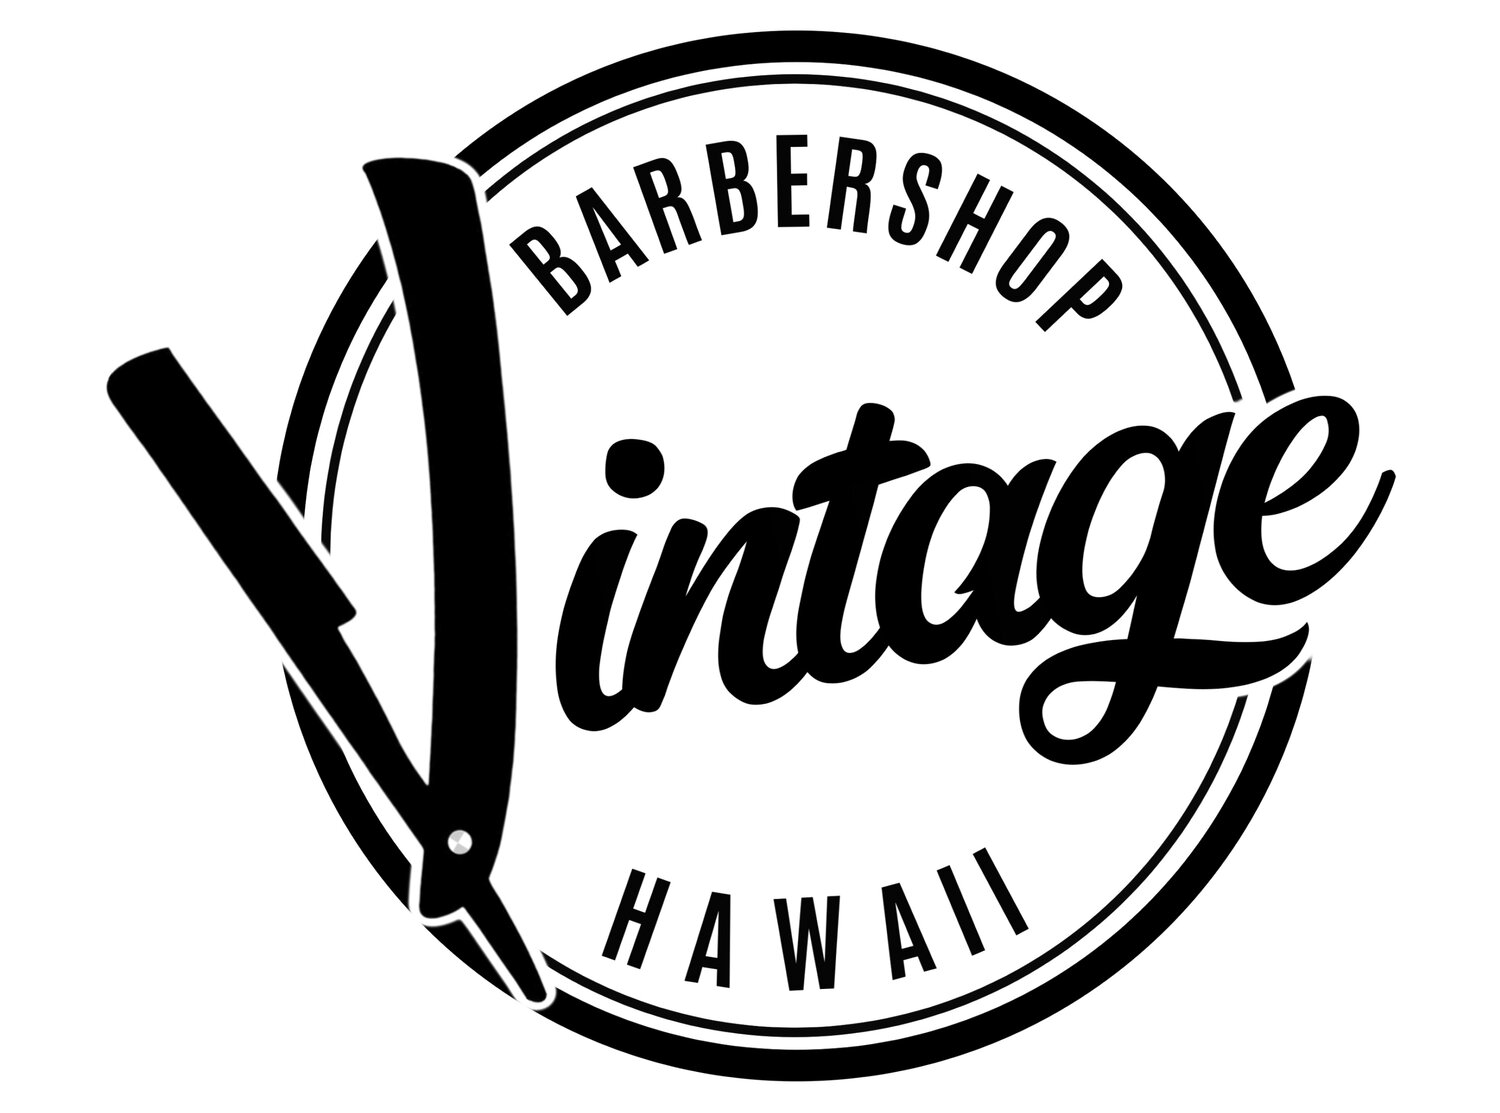 Vintage Barbershop Hawaii